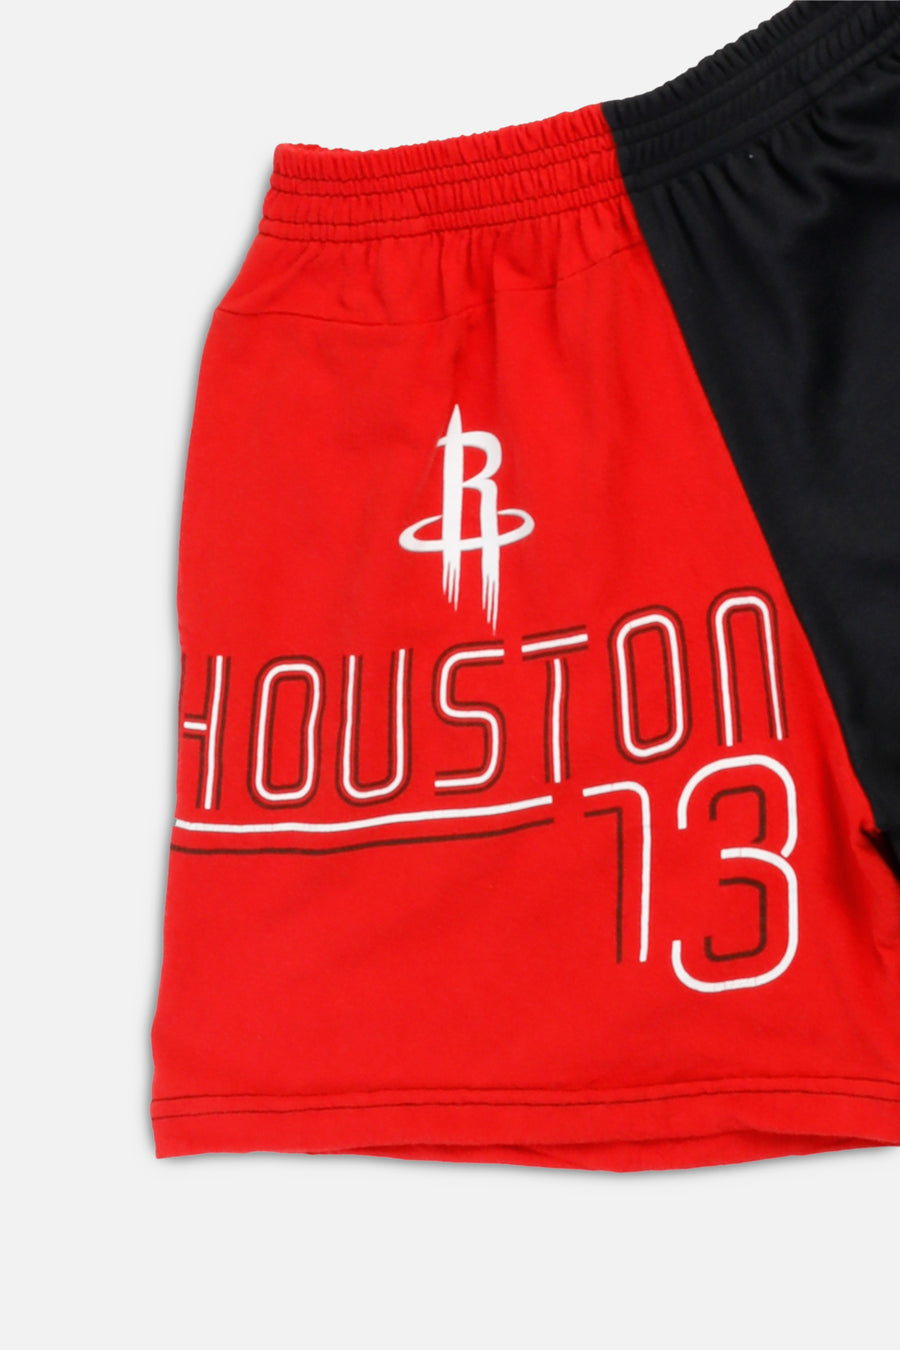 Unisex Rework Houston Rockets NBA Tee Shorts - XS